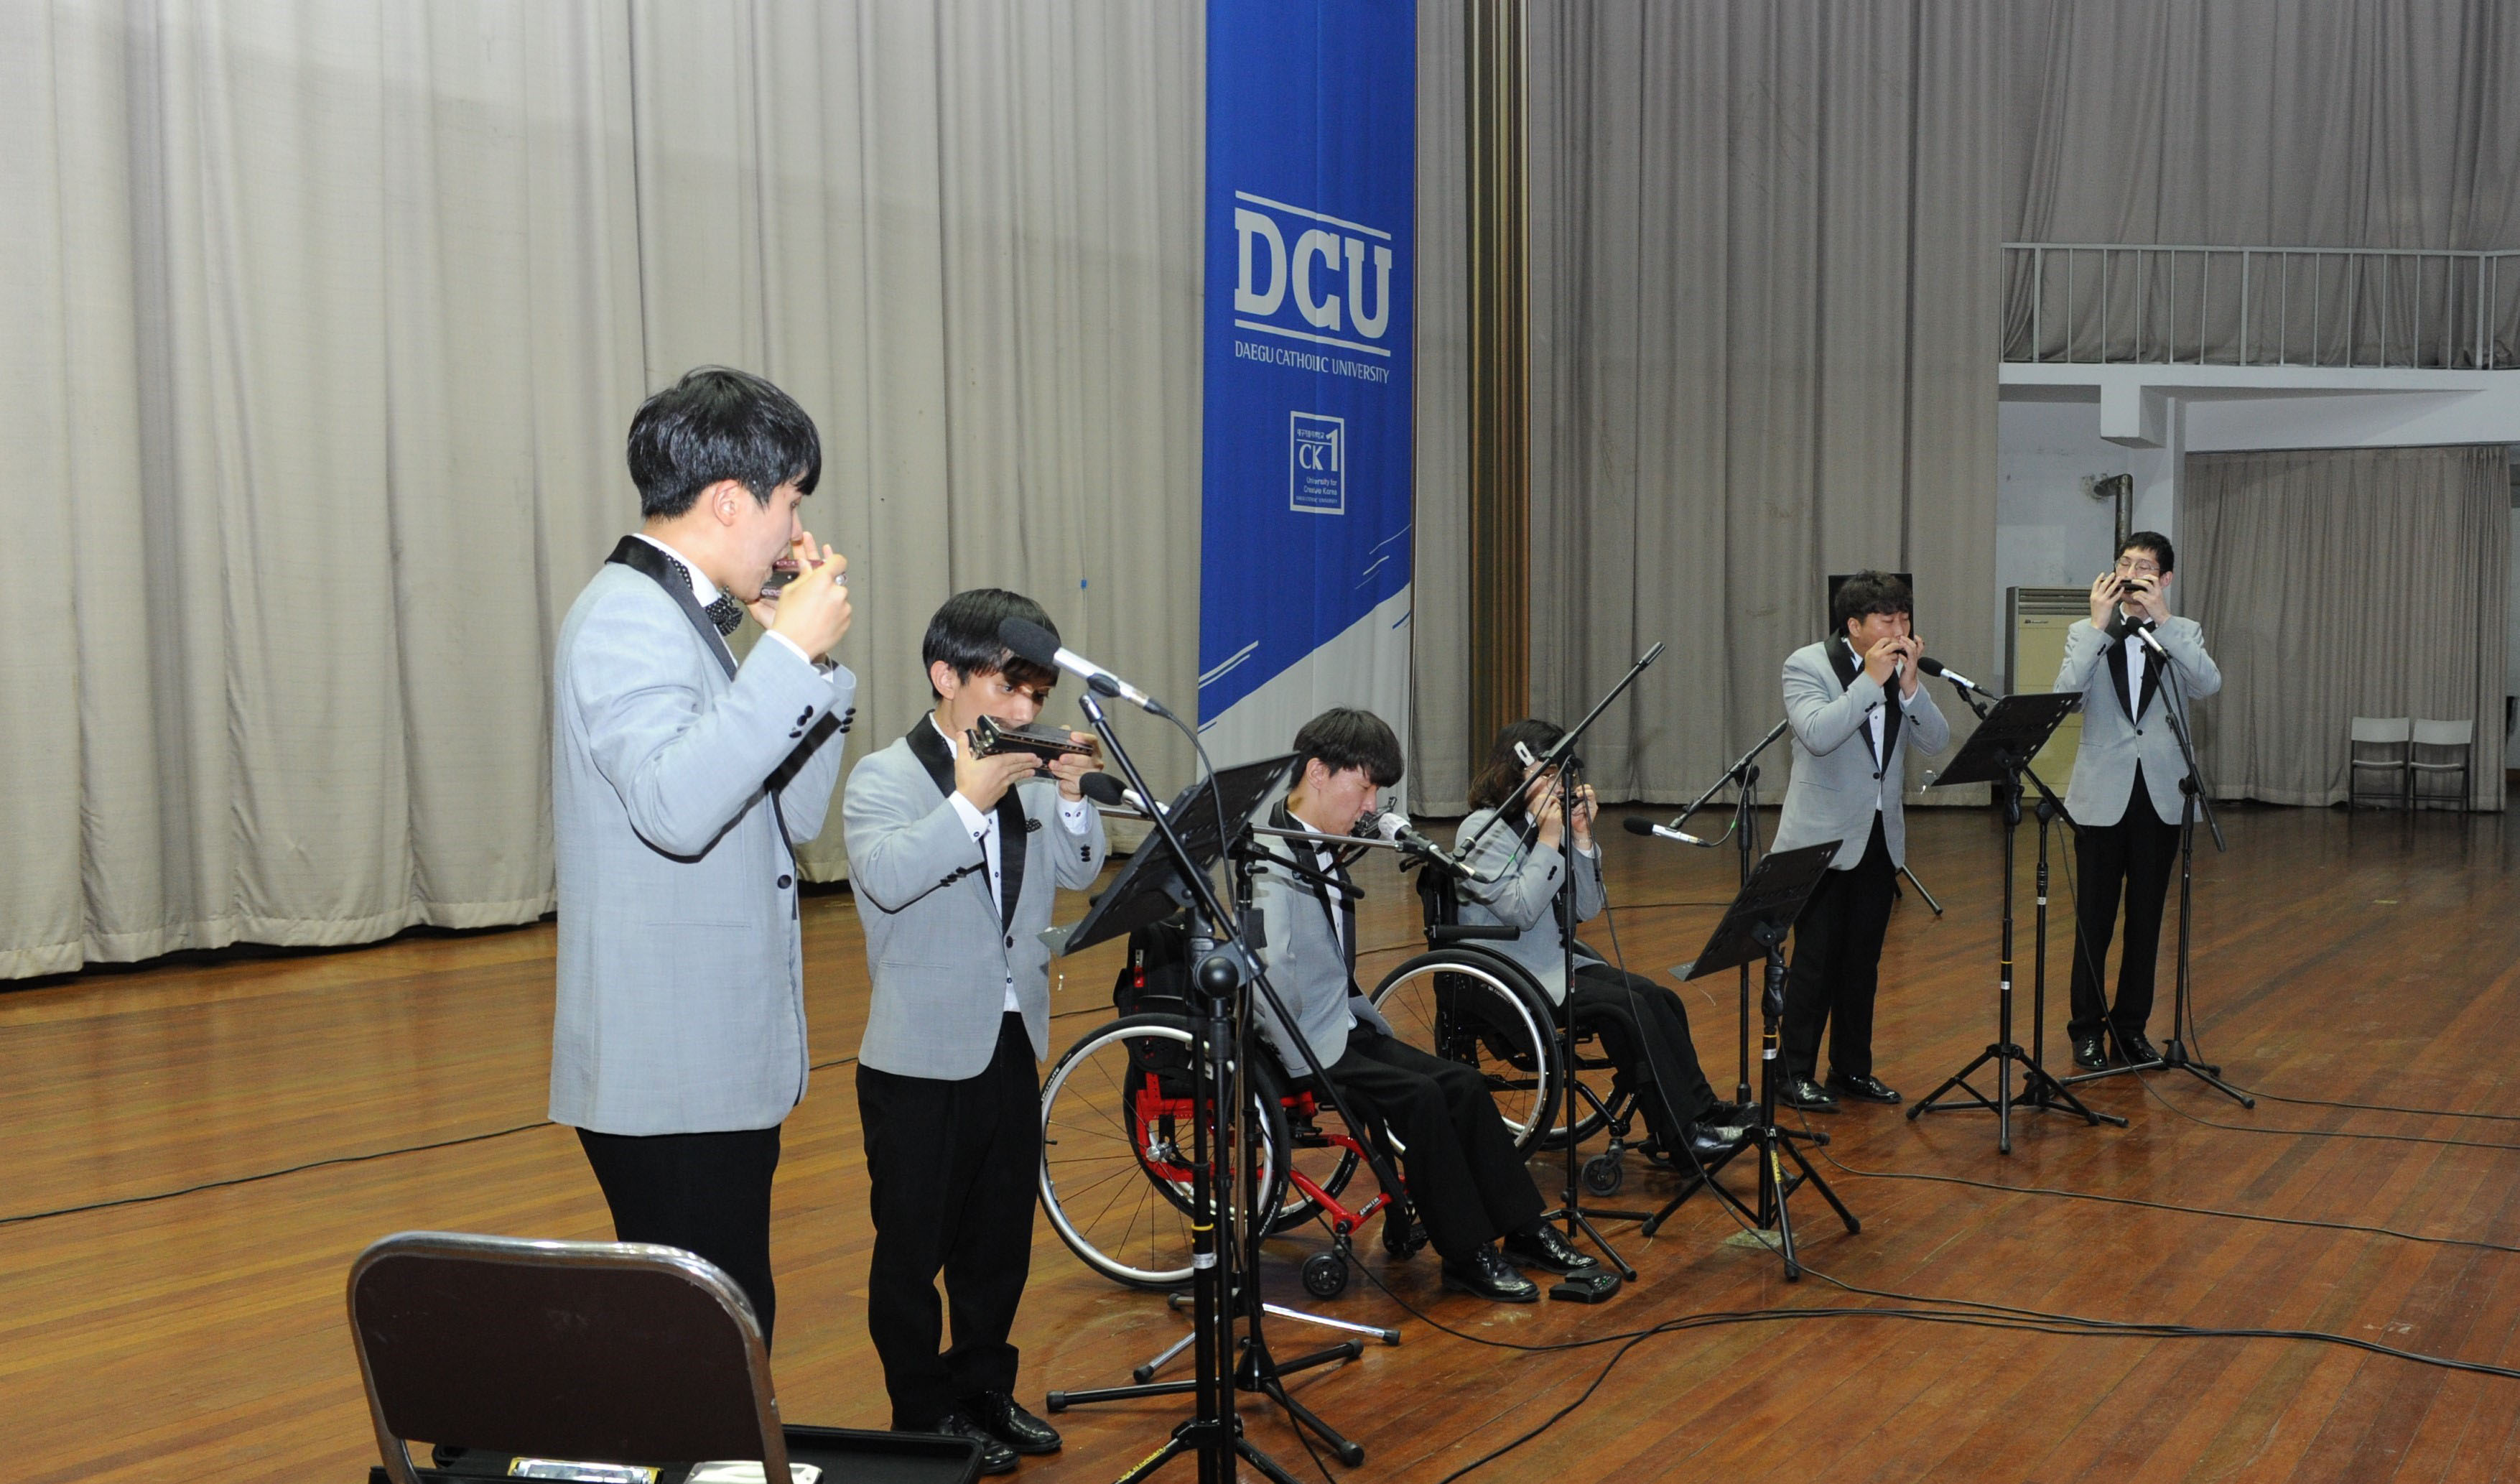 9월 1일 우리 대학 구성원이 된 DCU 맑은소리하모니카앙상블이 설립 공연을 하고 있다.